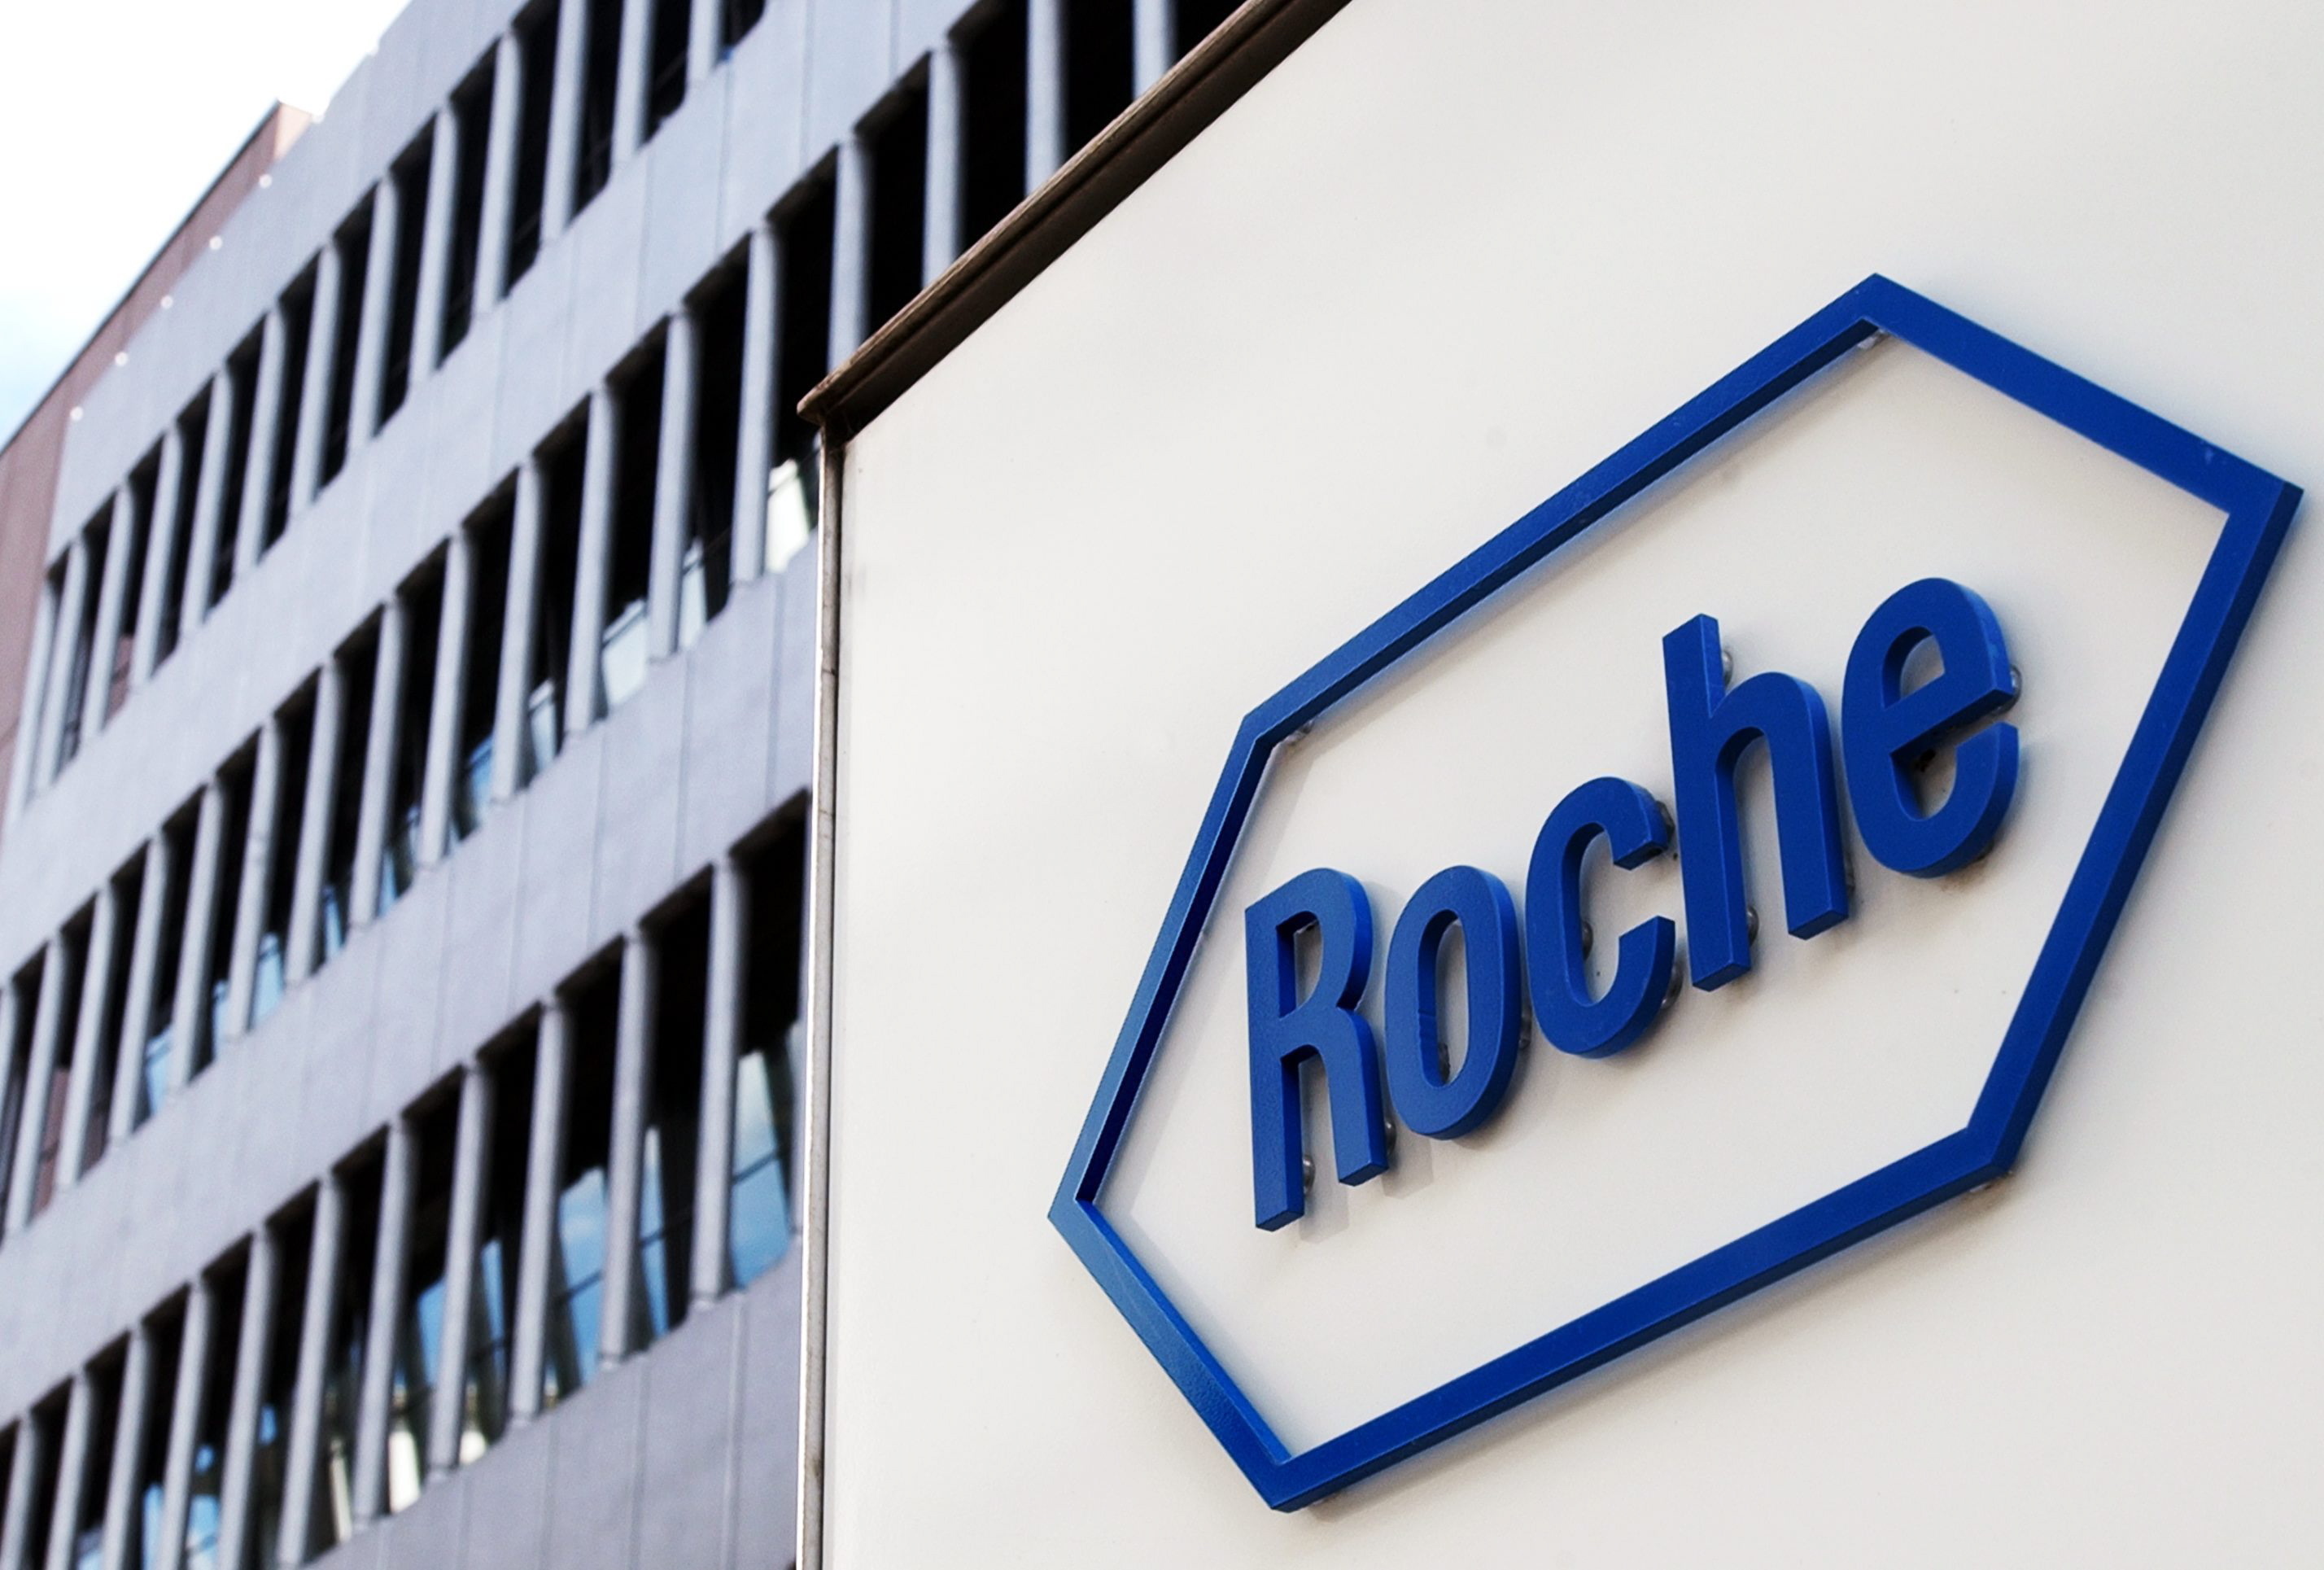 Roche anunció que su tratamiento contra el coronavirus con anticuerpos monoclonales presentó resultados positivos en pacientes hospitalizados